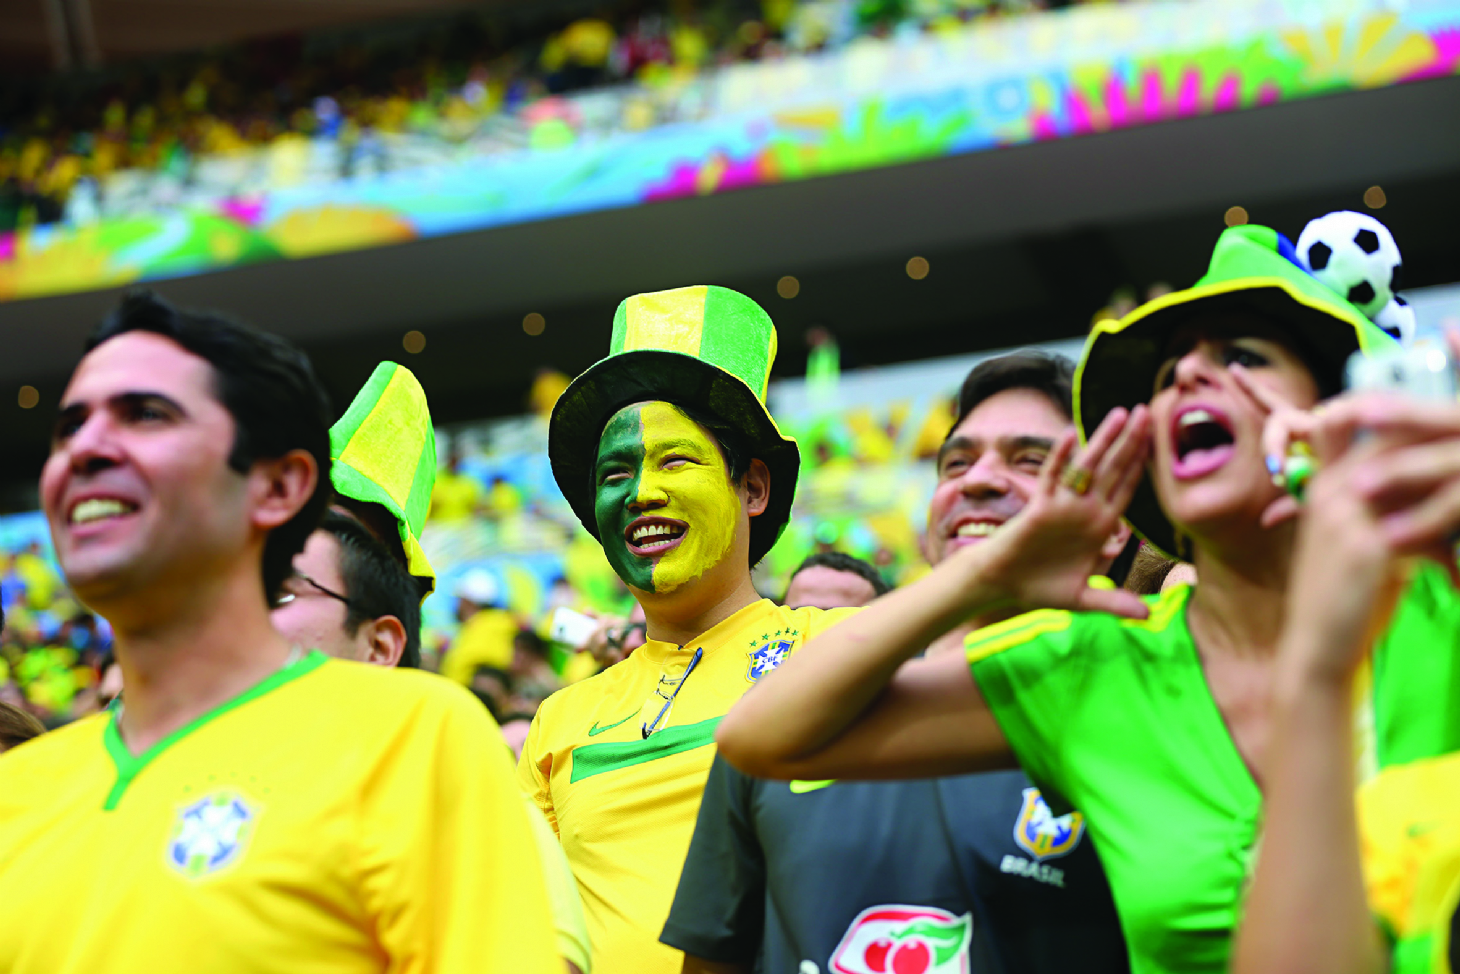 Copa muda horários de expedientes | Jornal da Orla